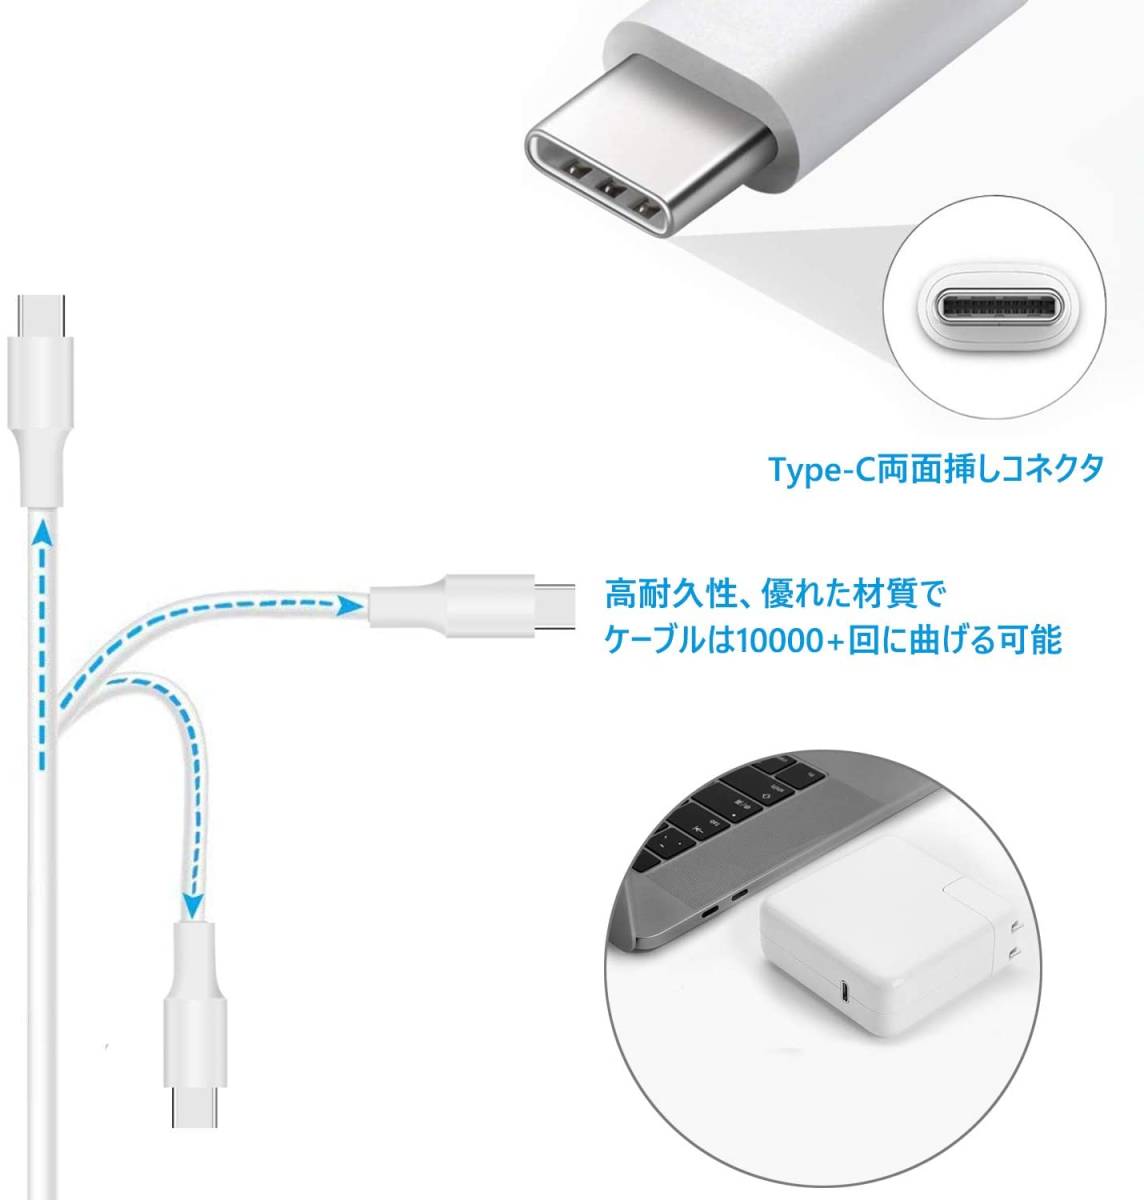 87W USB C 充電器 Macbook Pro Type-C アダプター PD タイプ-C 電源アダプタ Type C 急速充電器の画像4